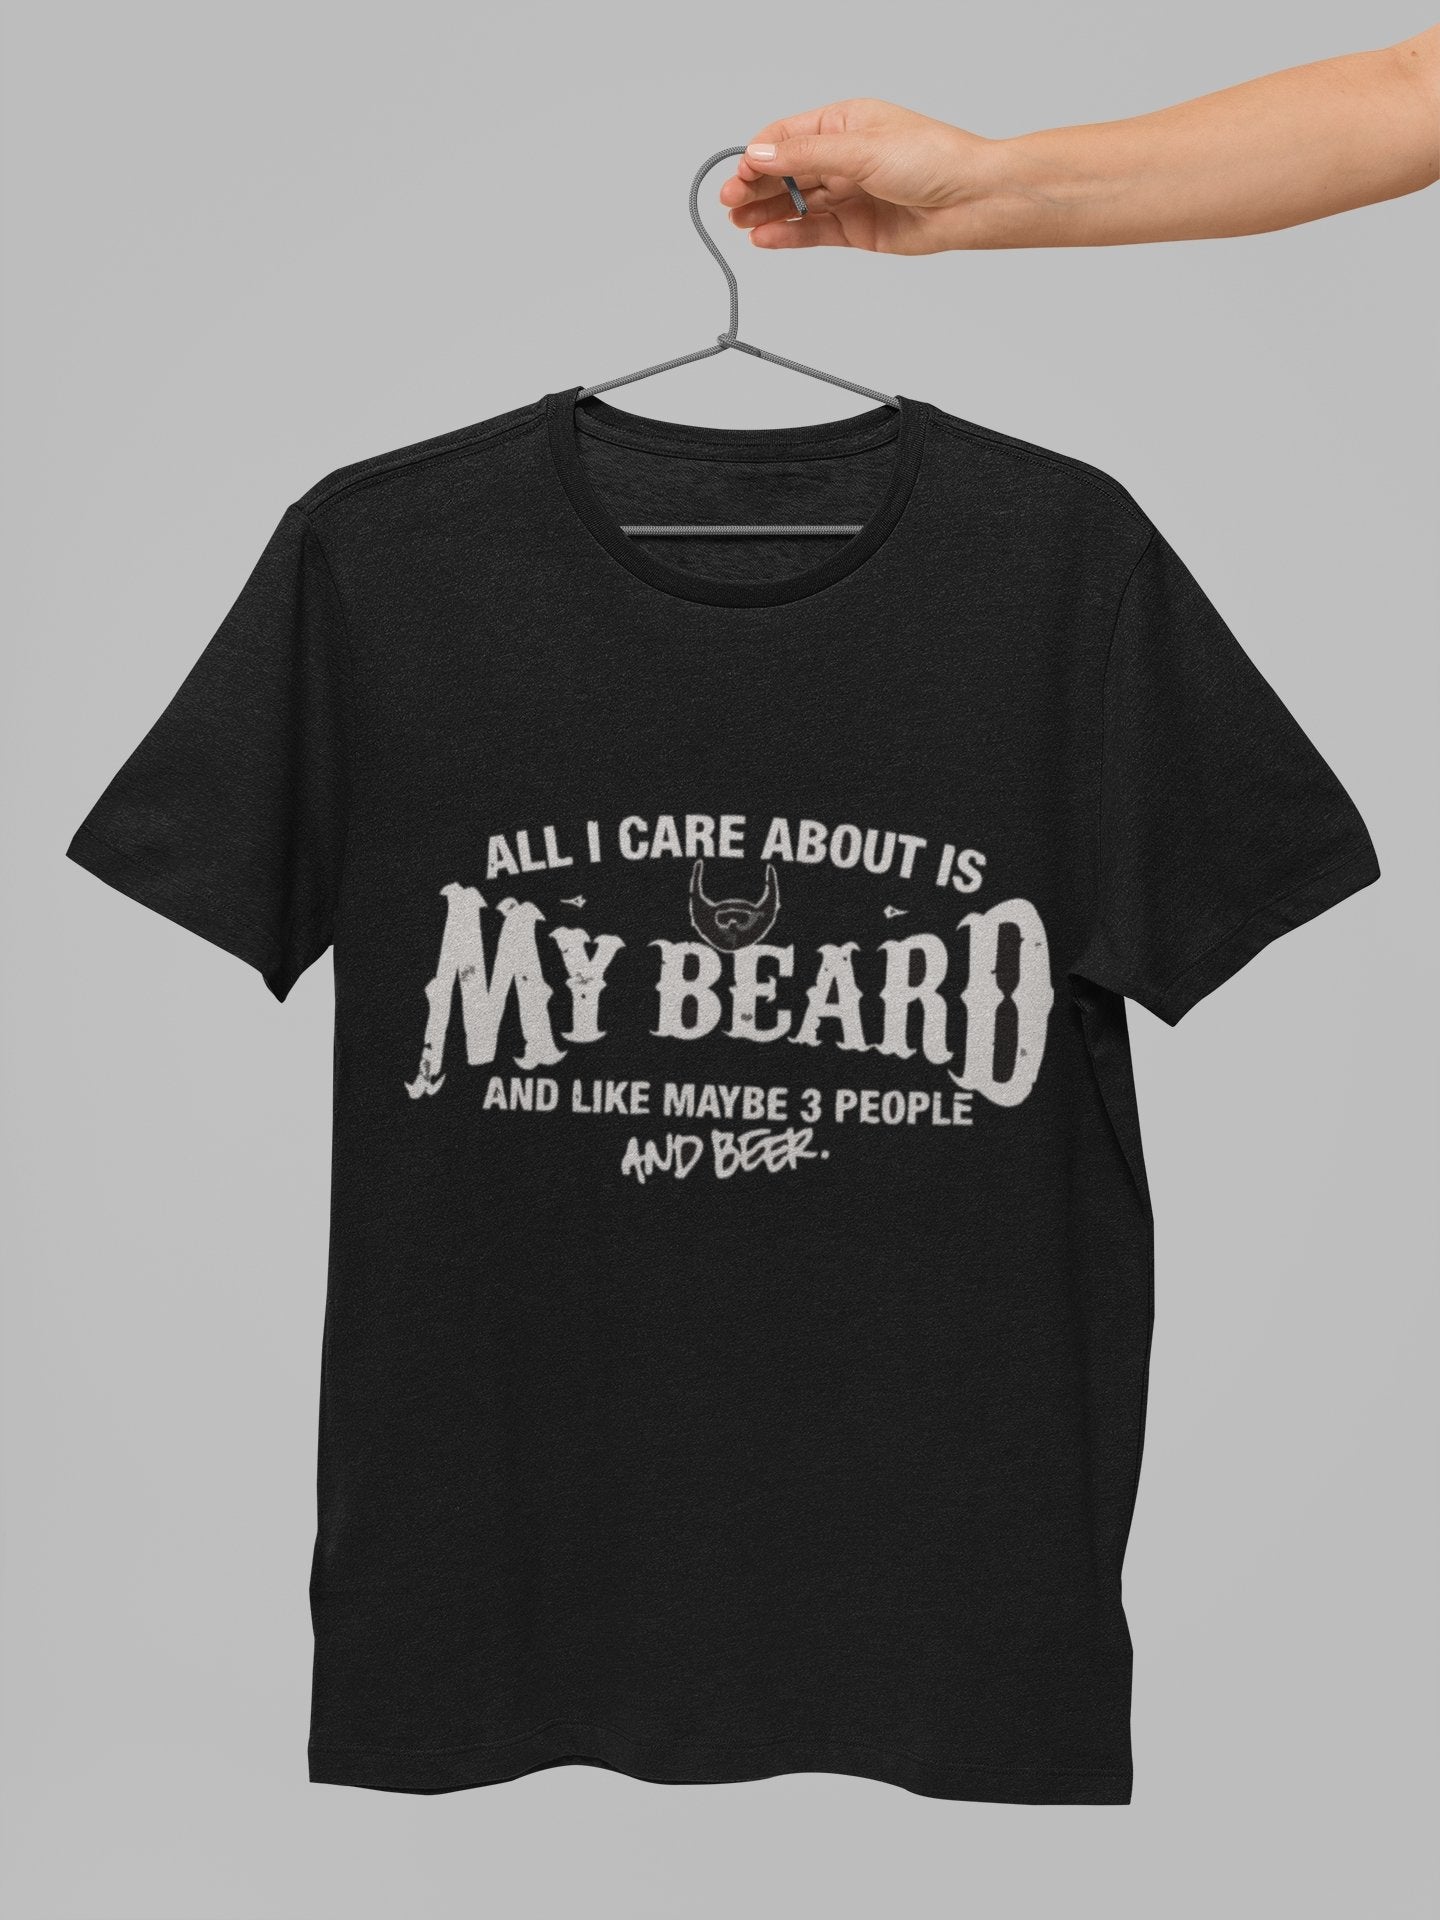 thelegalgang,My Beard T Shirt for Bearded Men,MEN.